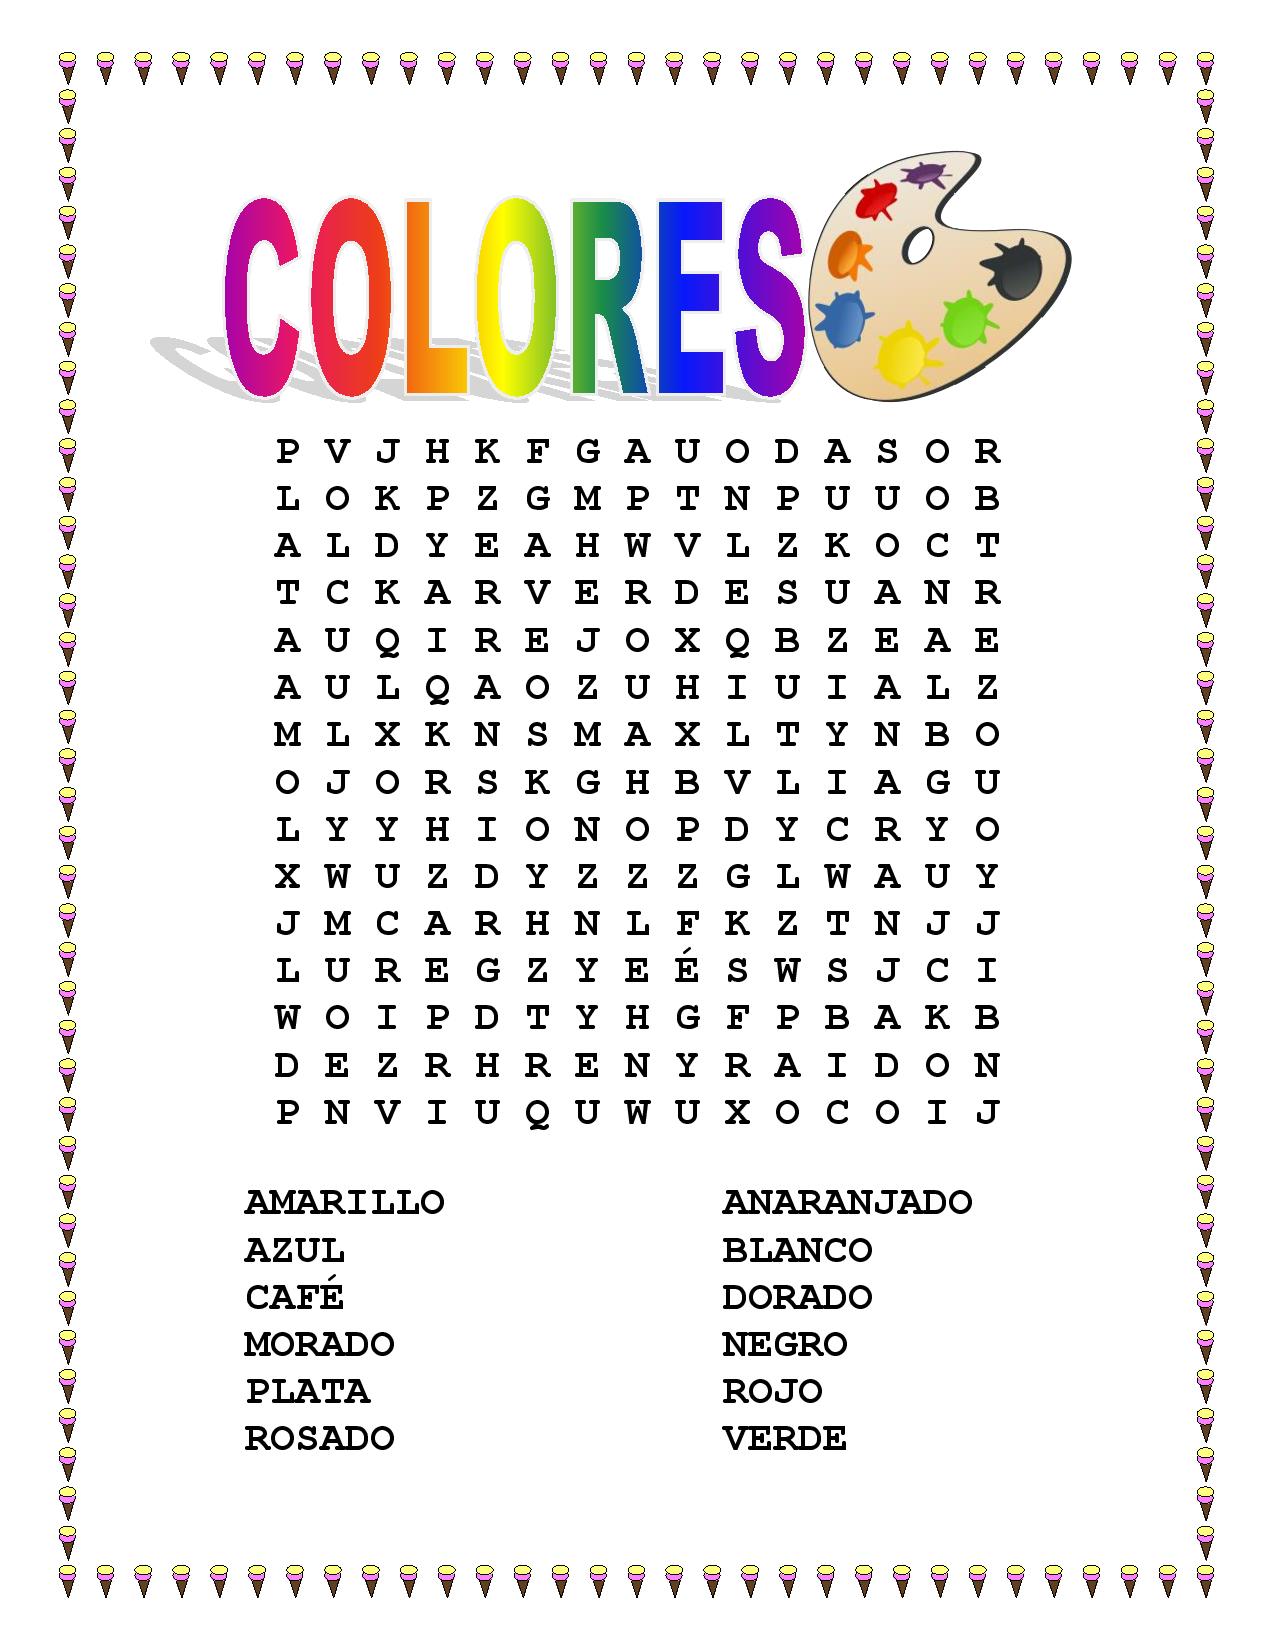 MISCELLANEOUS LESSON SPANISH COLORS Vocabulary Word Search Colorea Tu Helado Favorito The